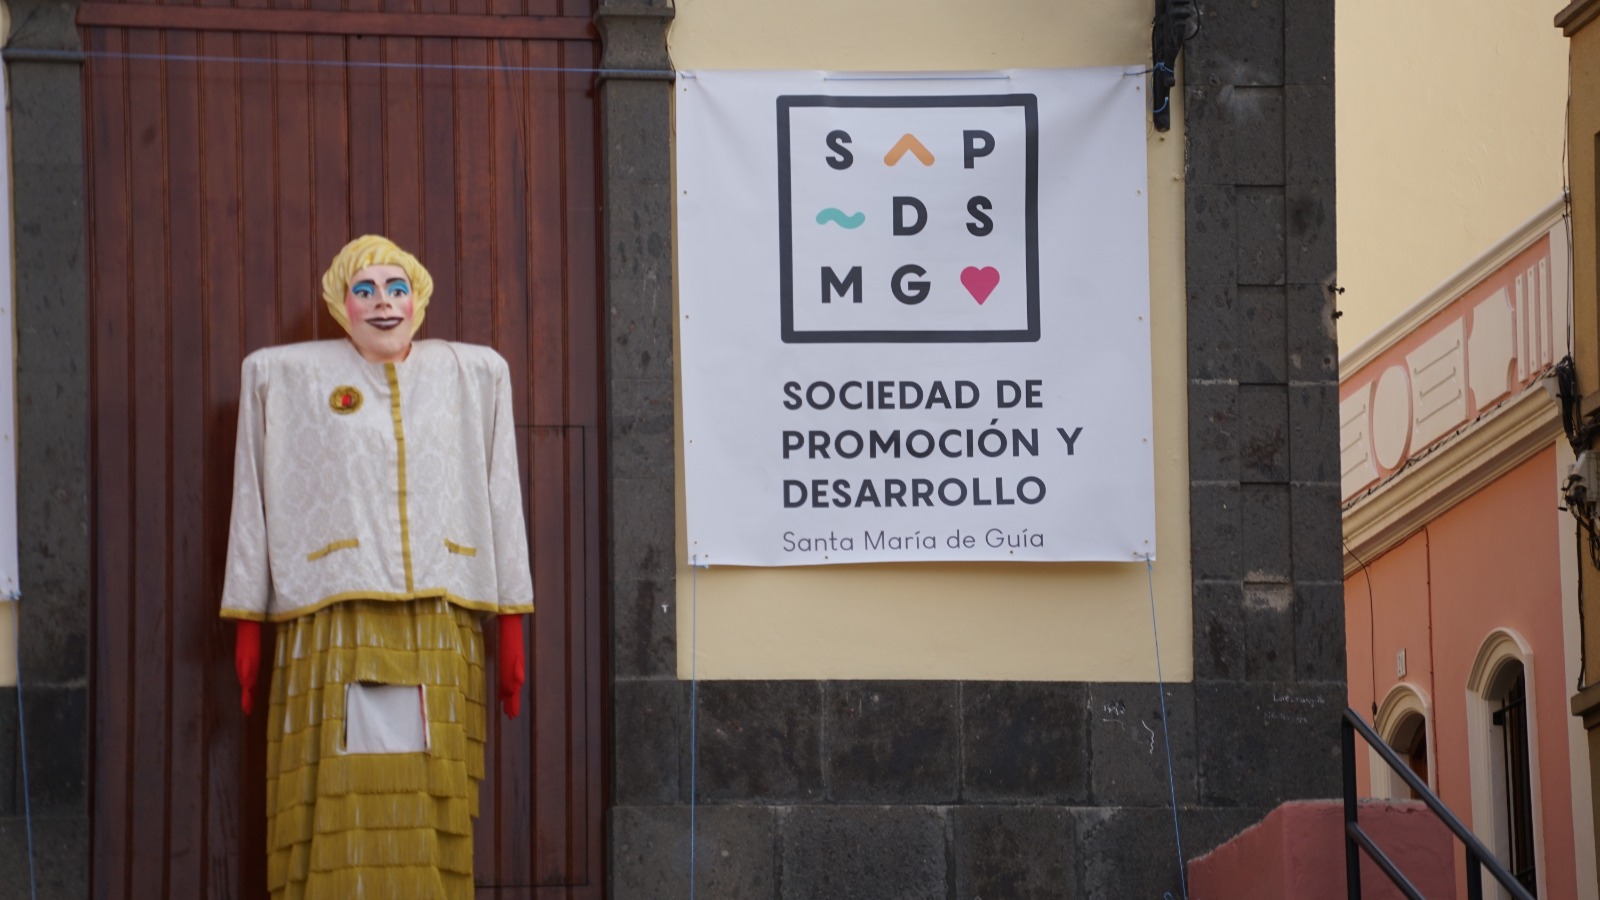 Papagüevo en representación a Xayo acompañado del cartel de la Sociedad de Promoción y Desarollo de Santa María de Guía